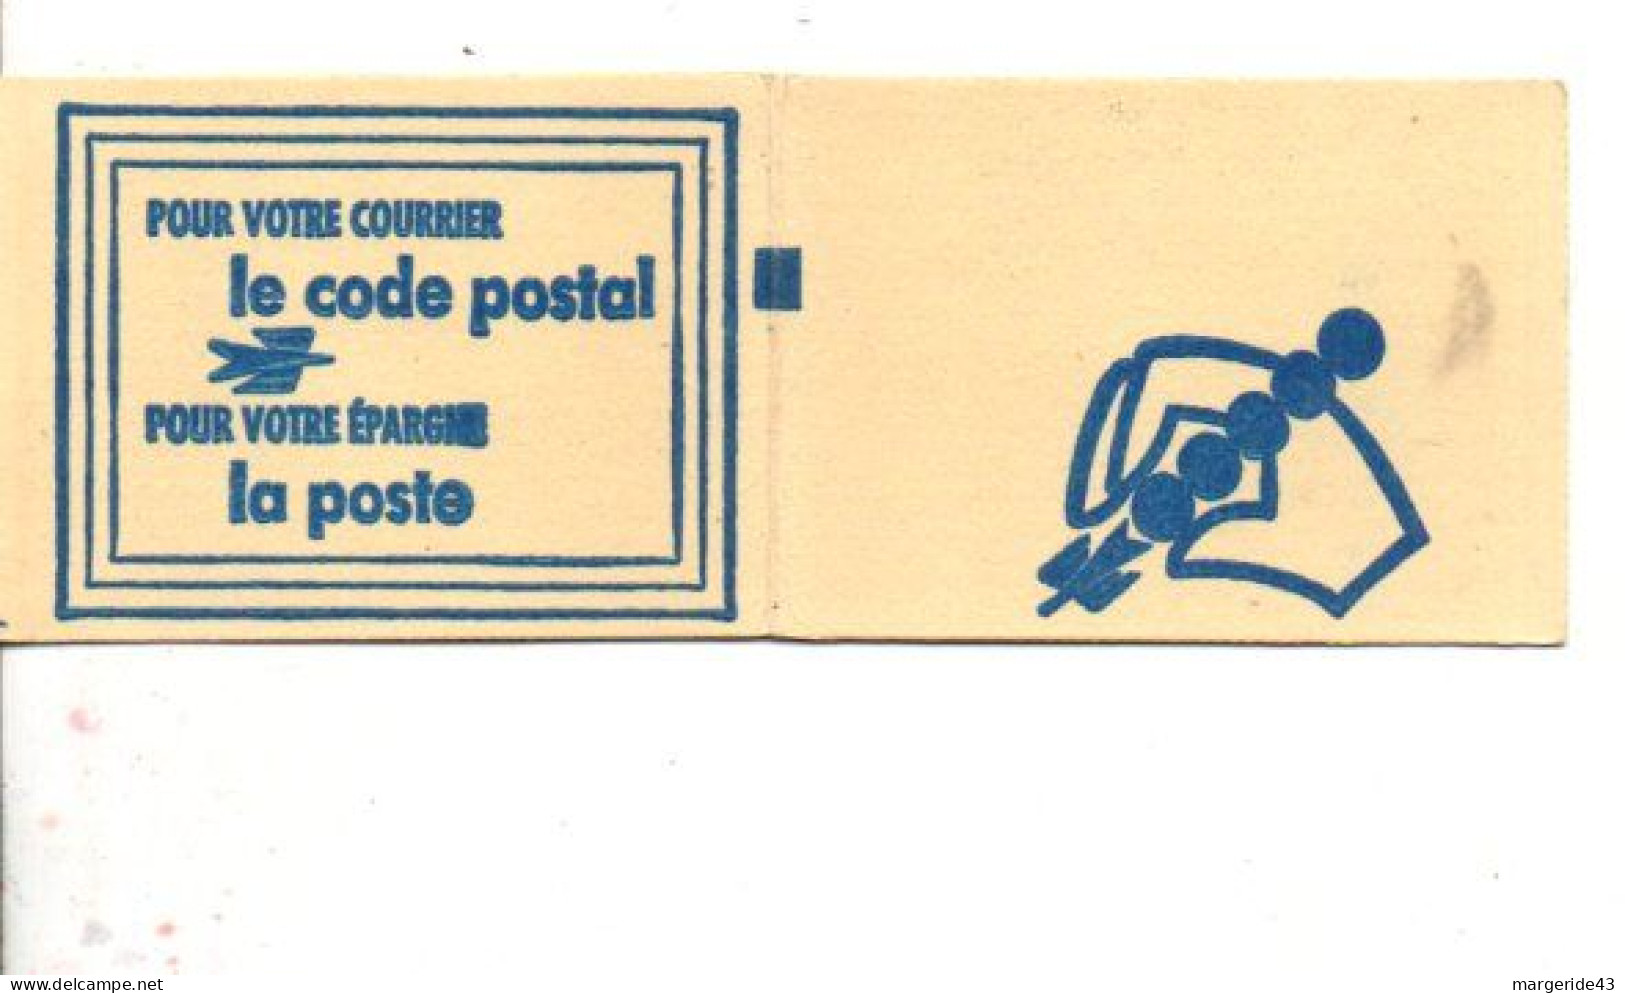 CARNET CODE POSTAL - 67100 STRASBOURG VERT - Blokken & Postzegelboekjes